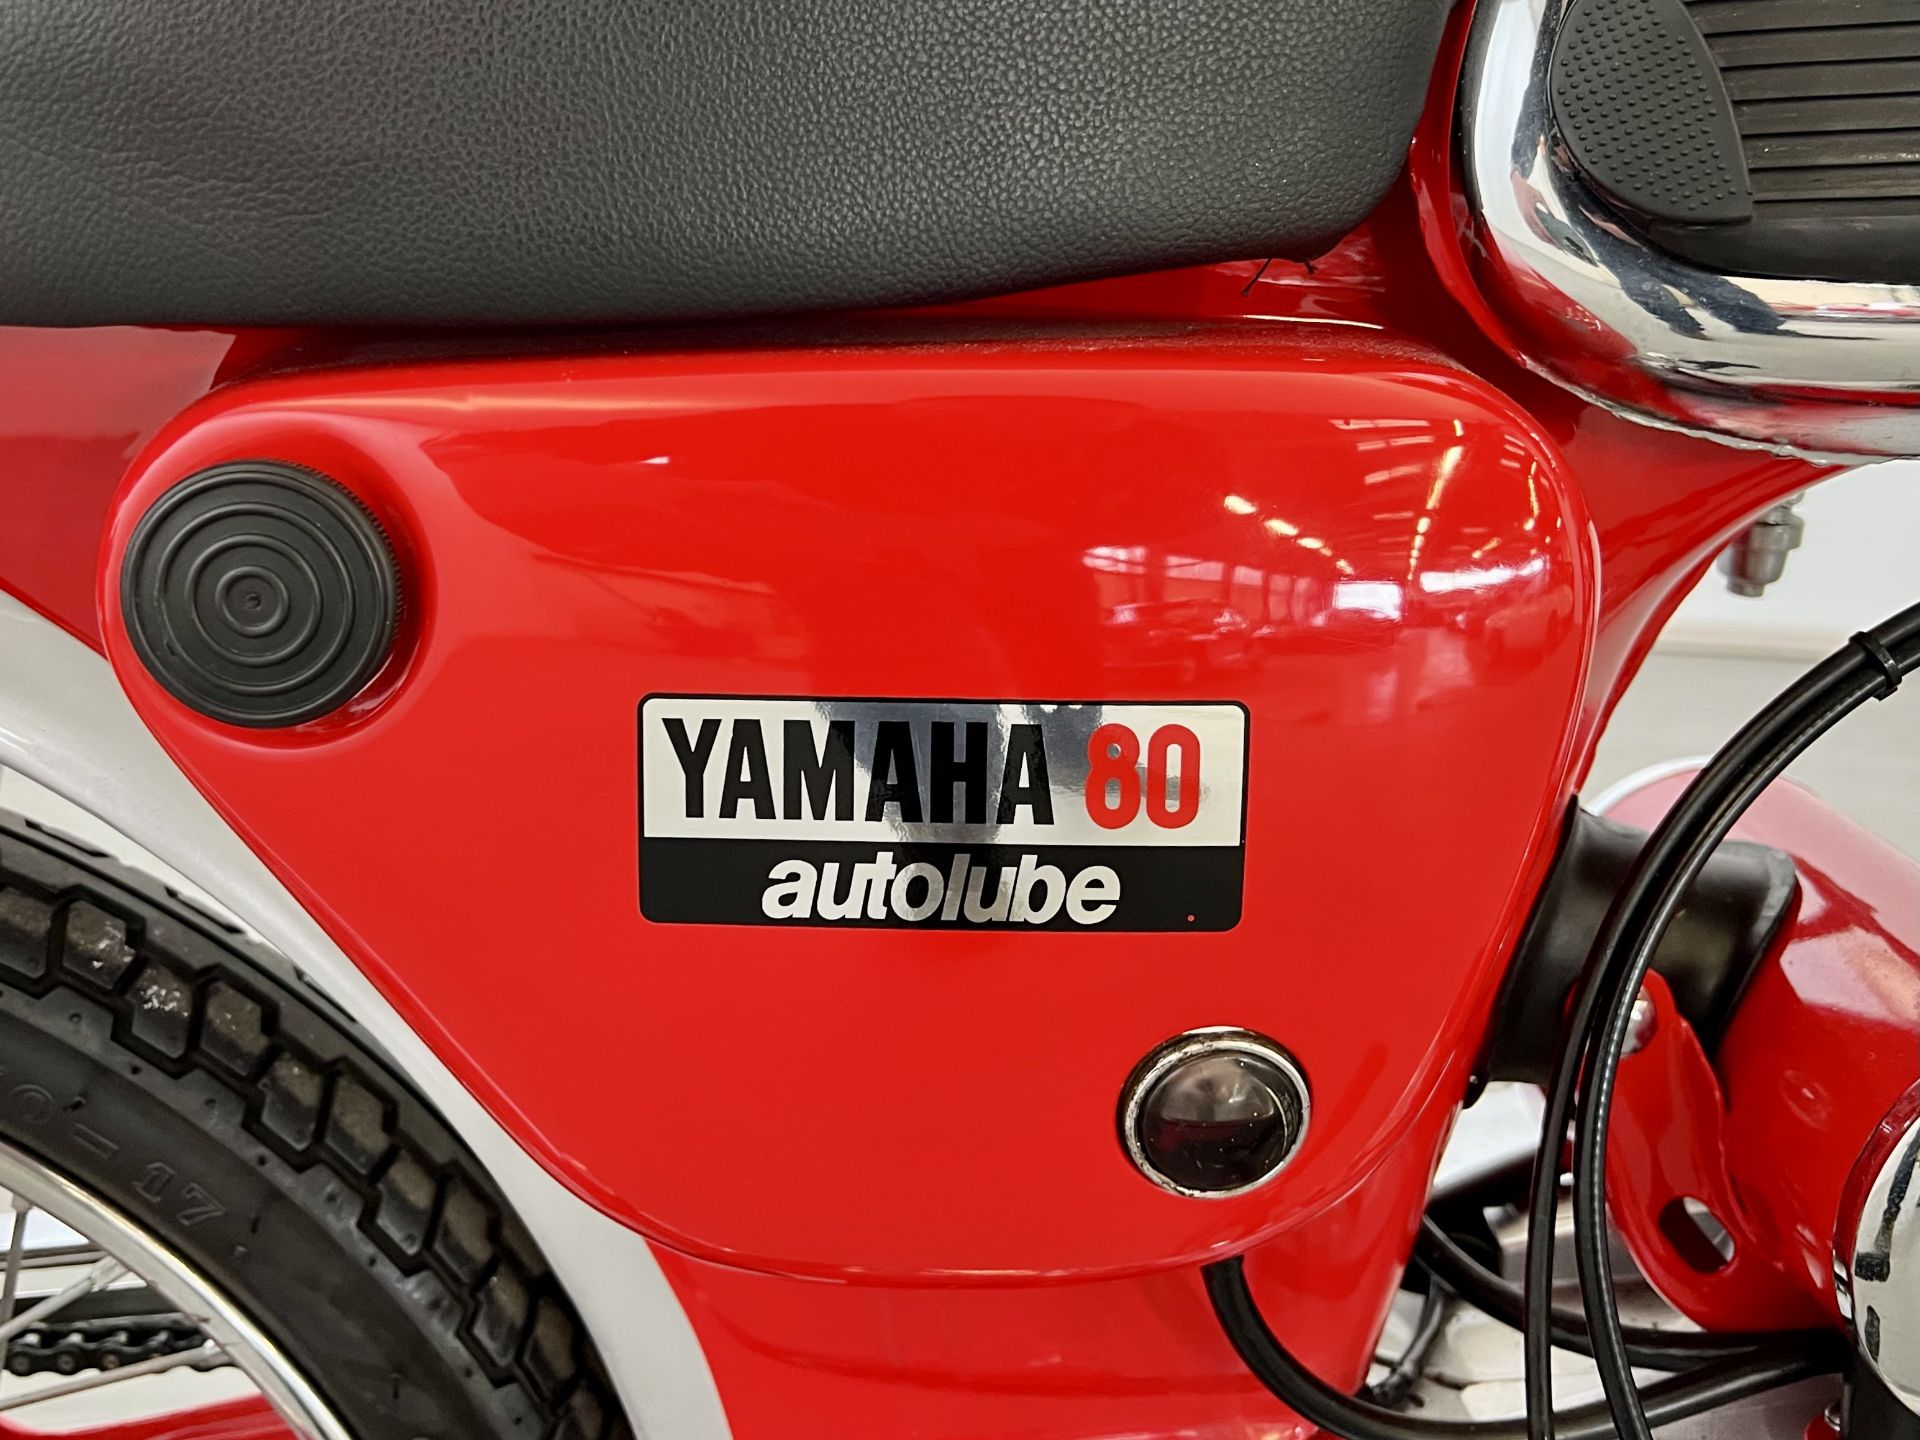 Yamaha 80 AutoLube - Image 23 of 26